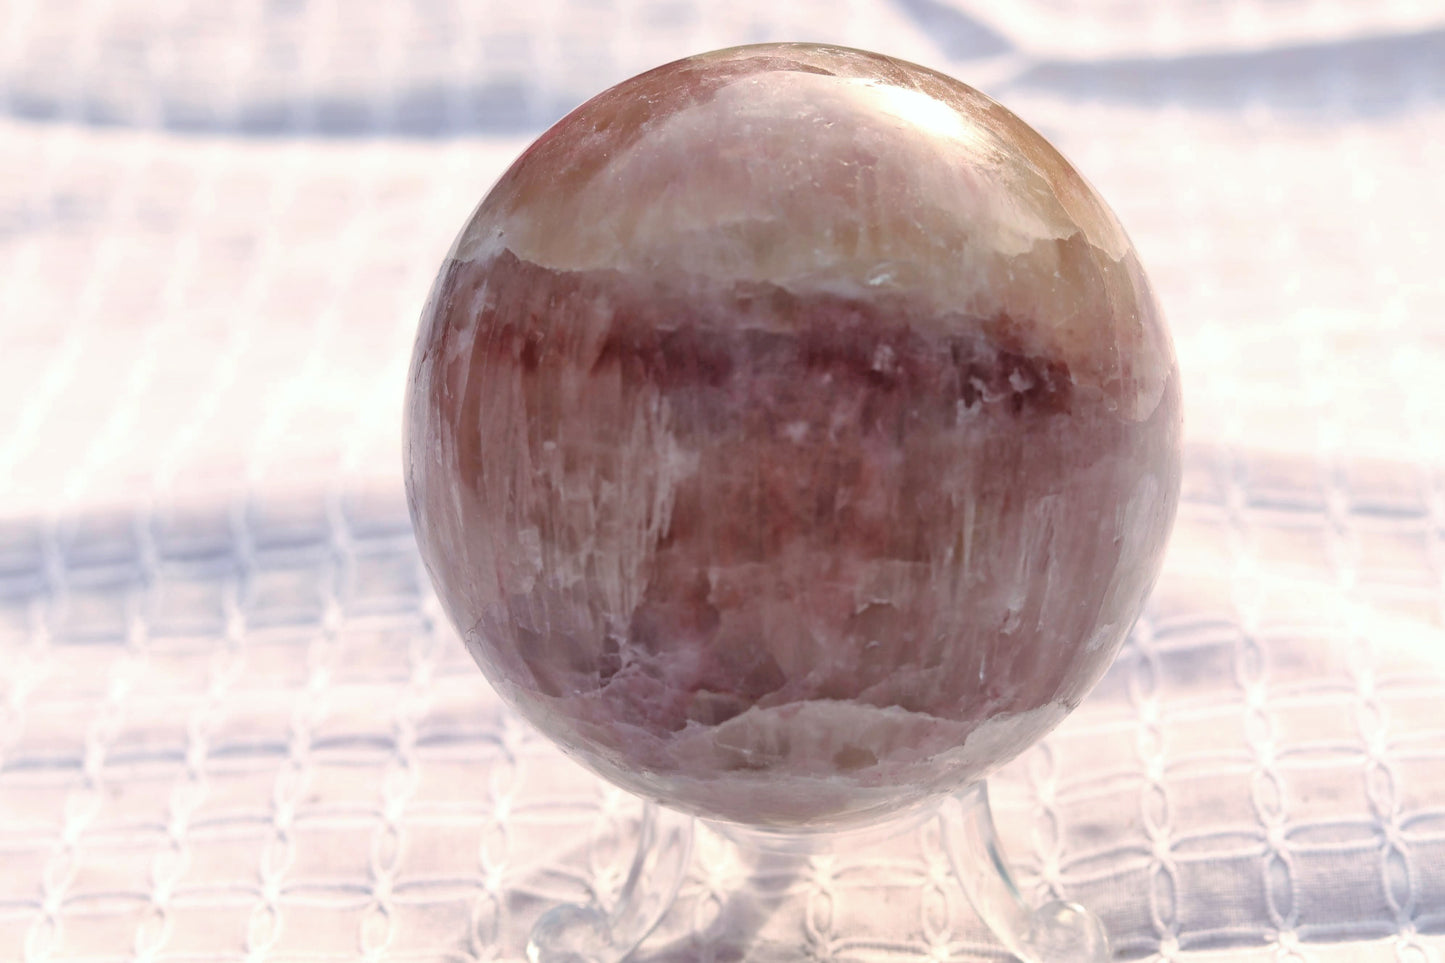 Rose Calcite Sphere